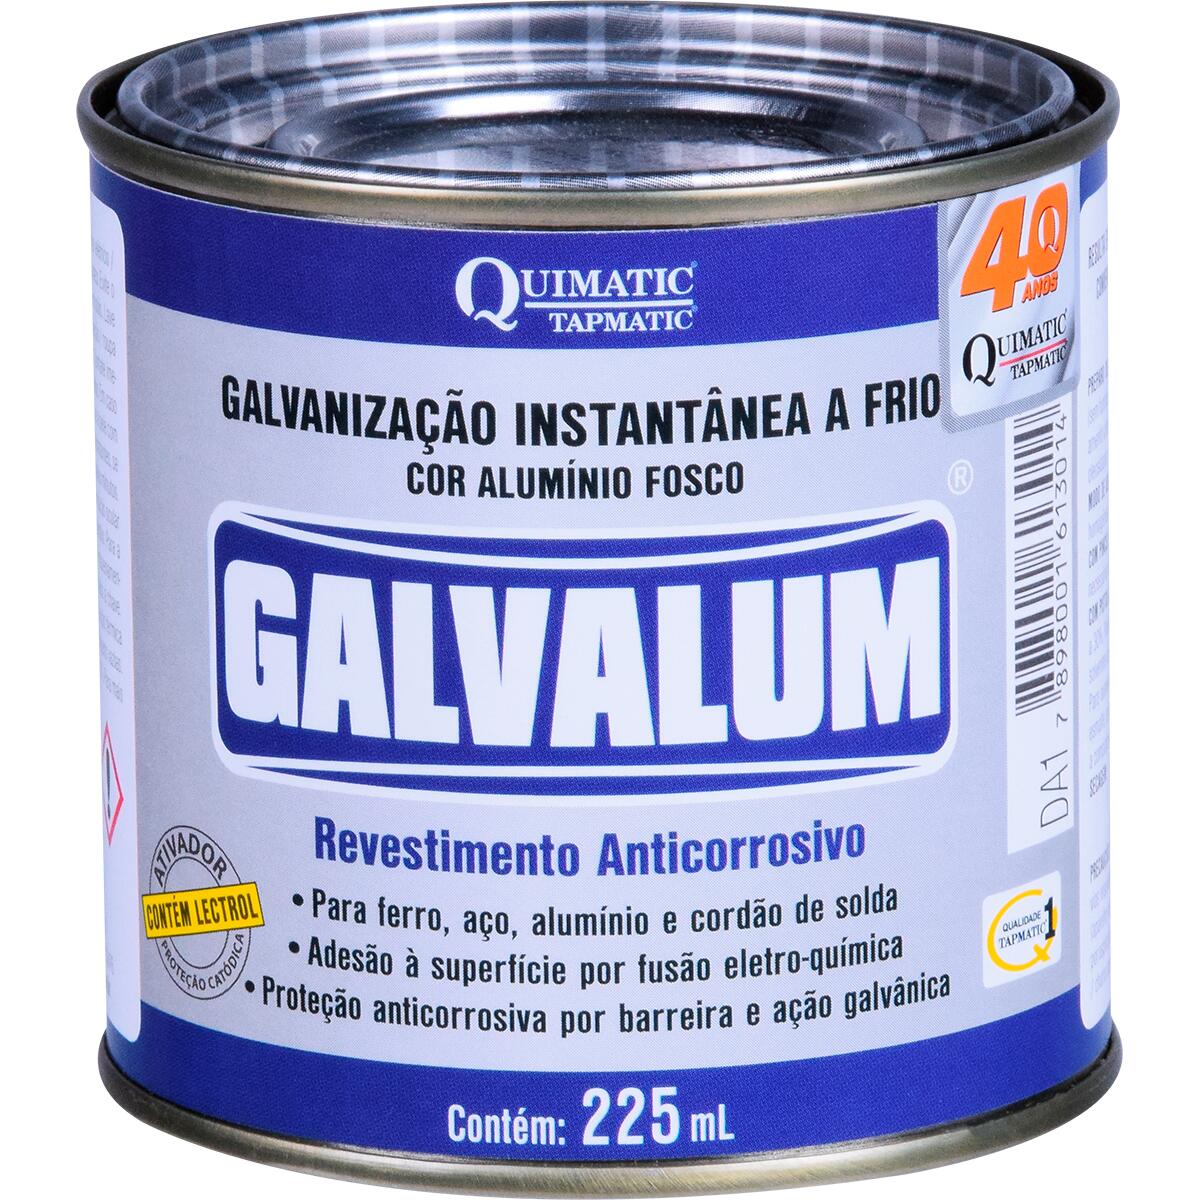 Galvalum Galvanização Aluminizada A Frio 225Ml Quimatic Tapmatic